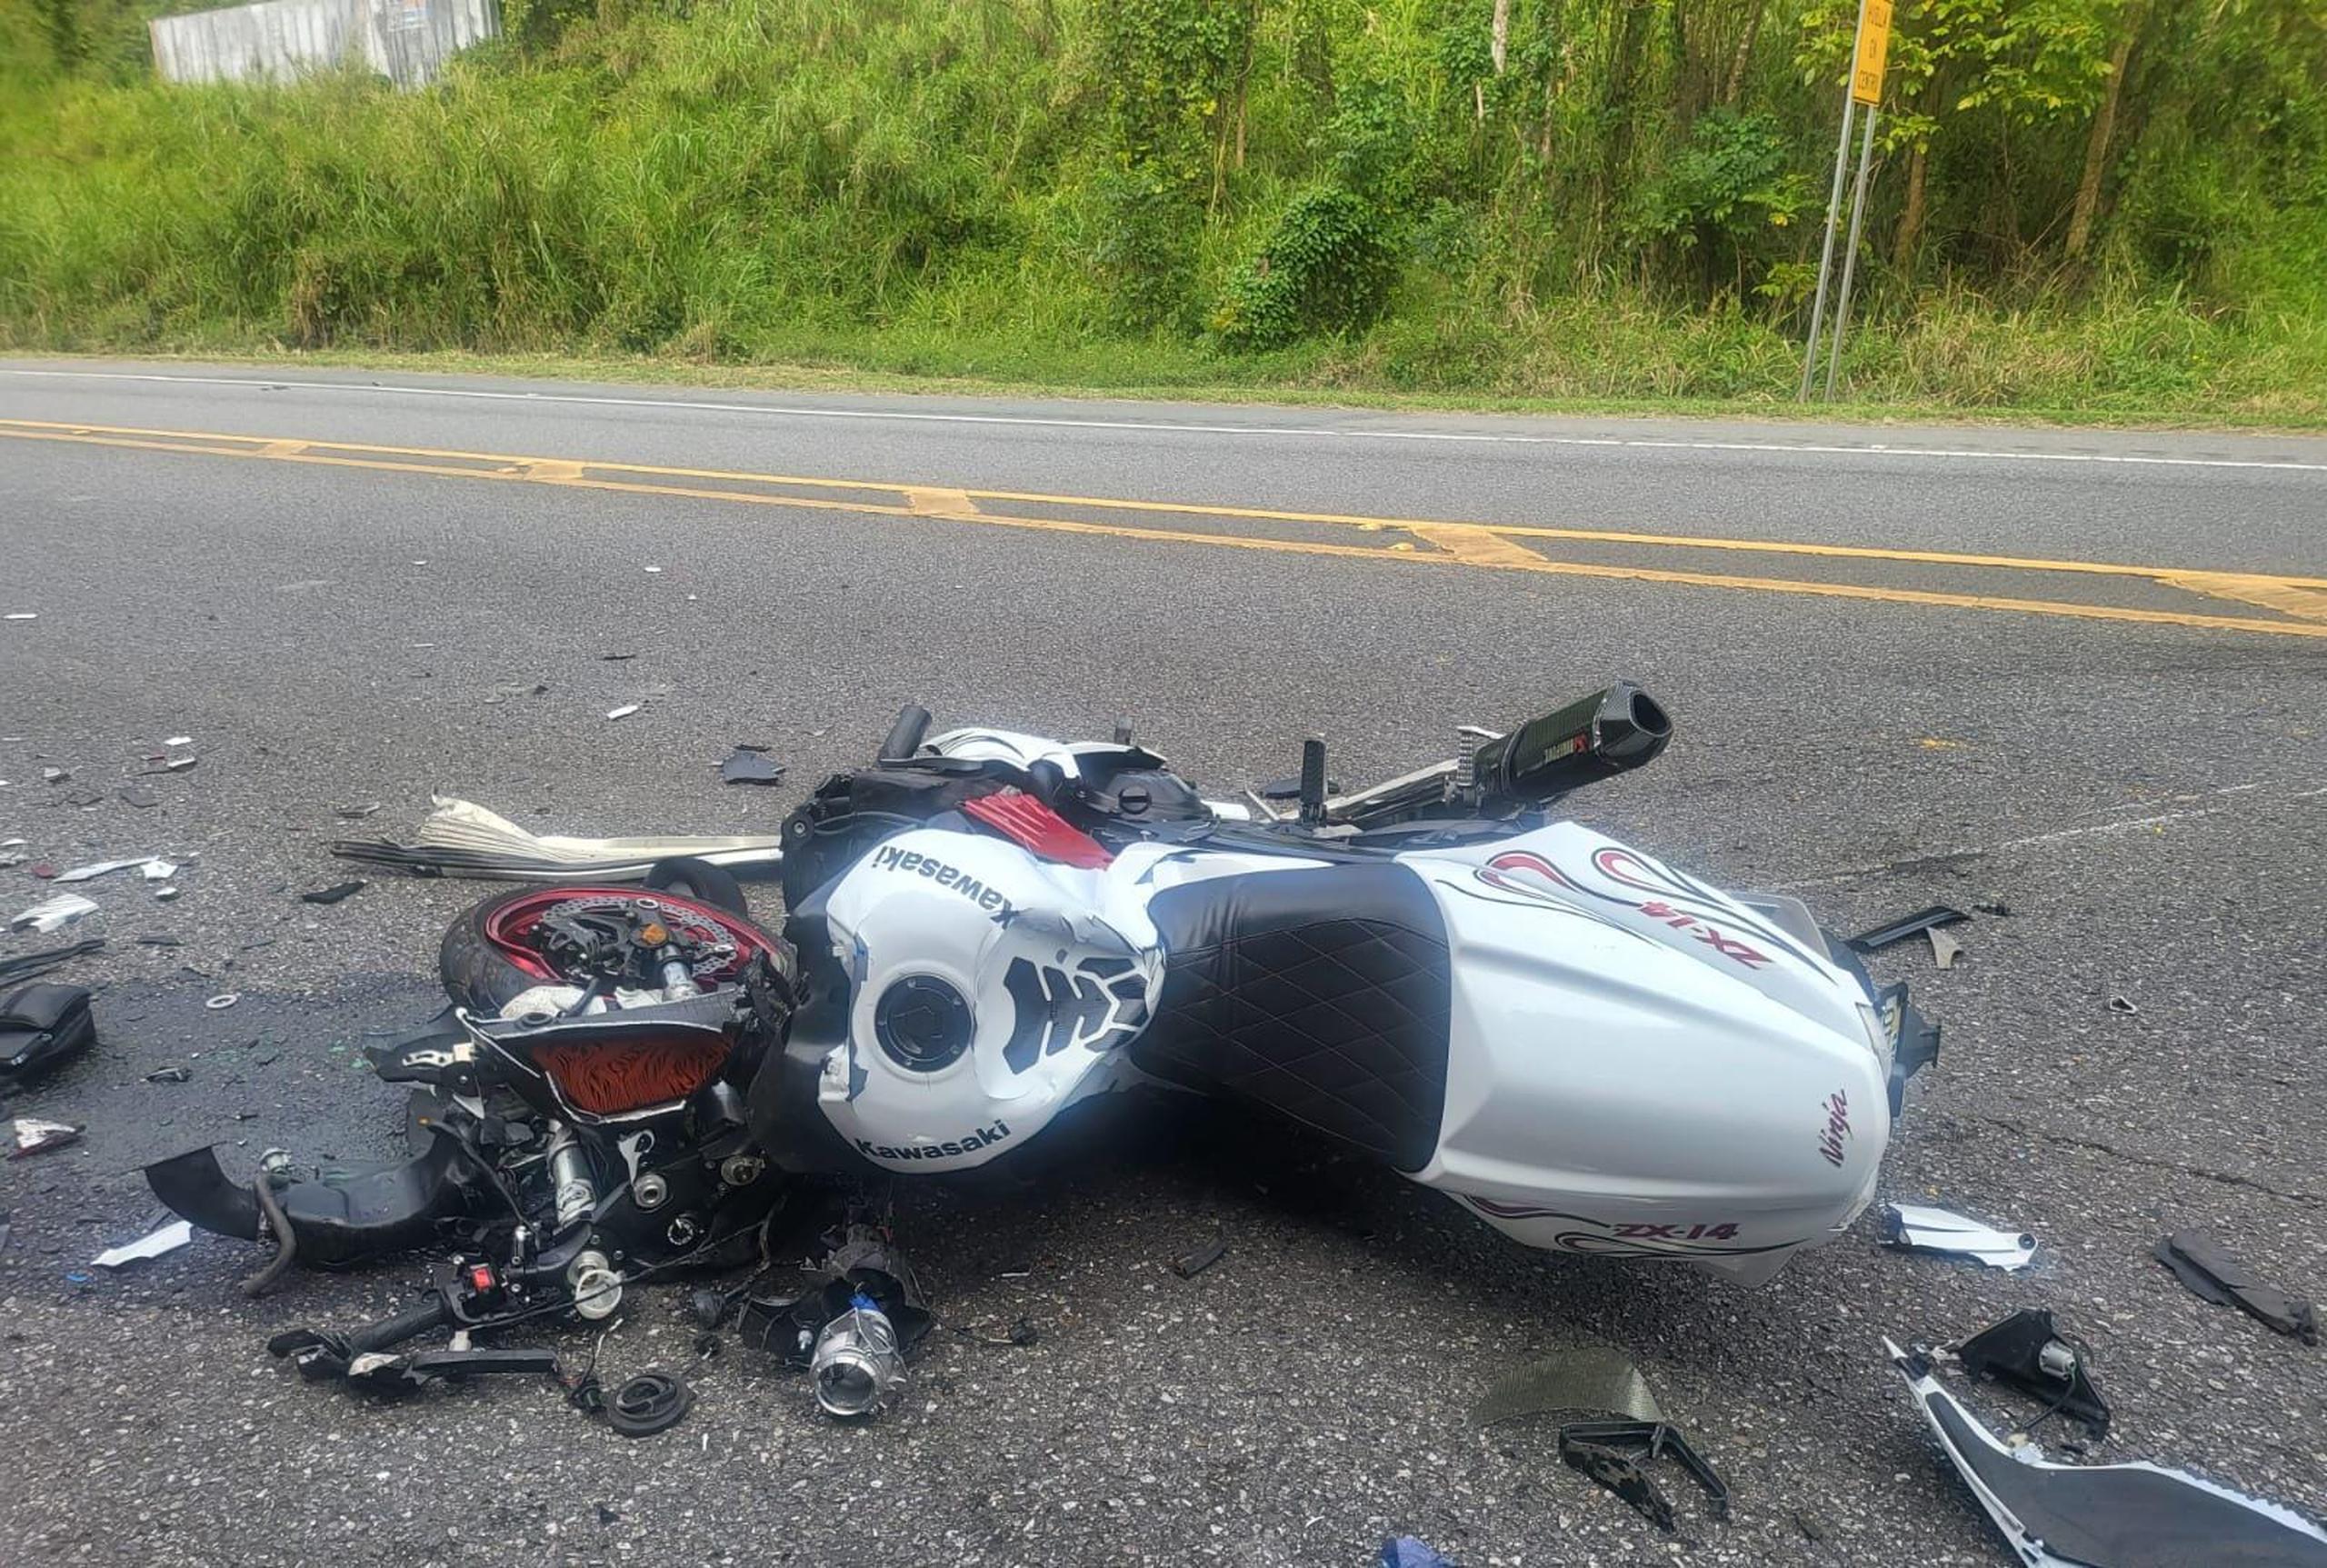 El motociclista, que viajaba a una velocidad mayor a la permitida, impactó una guagua y falleció en la escena.